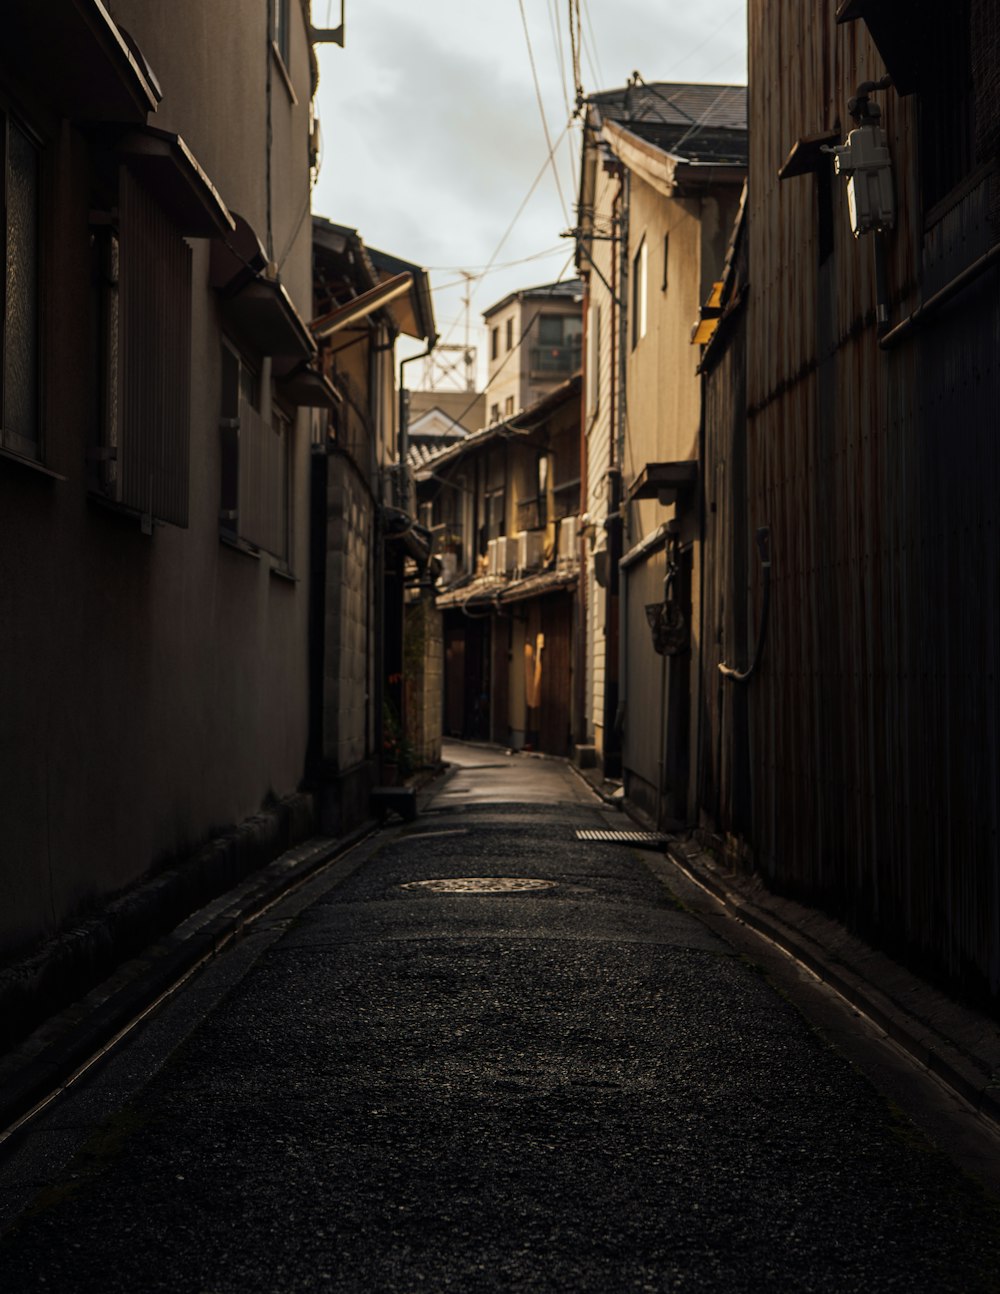 alleyway between houses during daytime